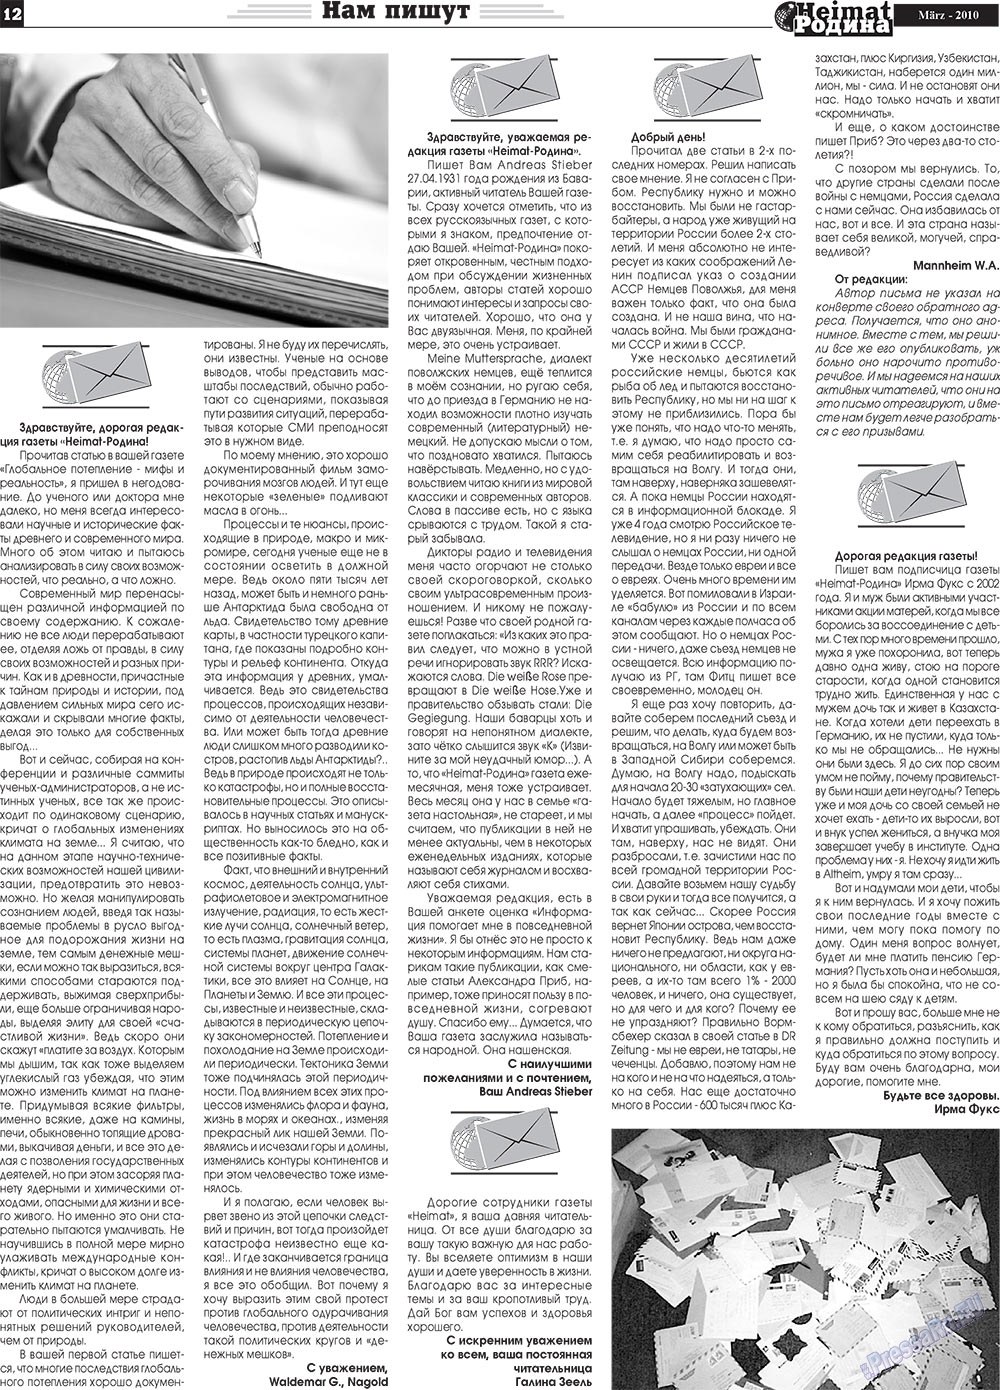 Heimat-Родина (газета). 2010 год, номер 3, стр. 12